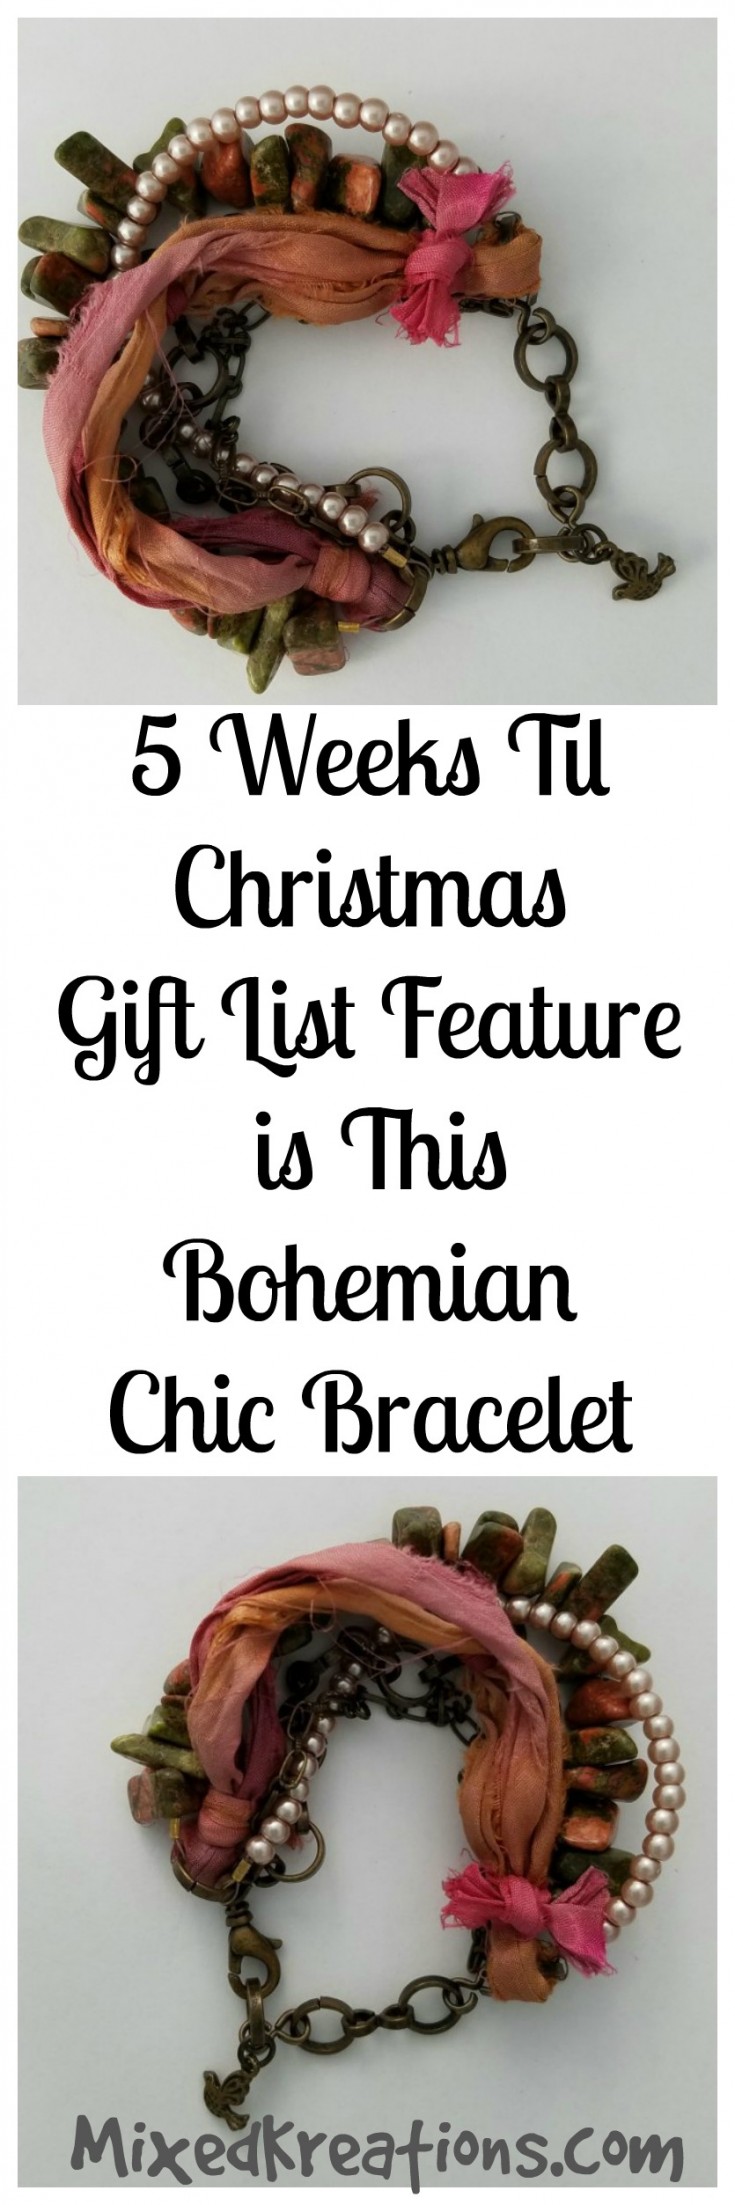 5 weeks til Christmas gift list - bohemian chic bracelet